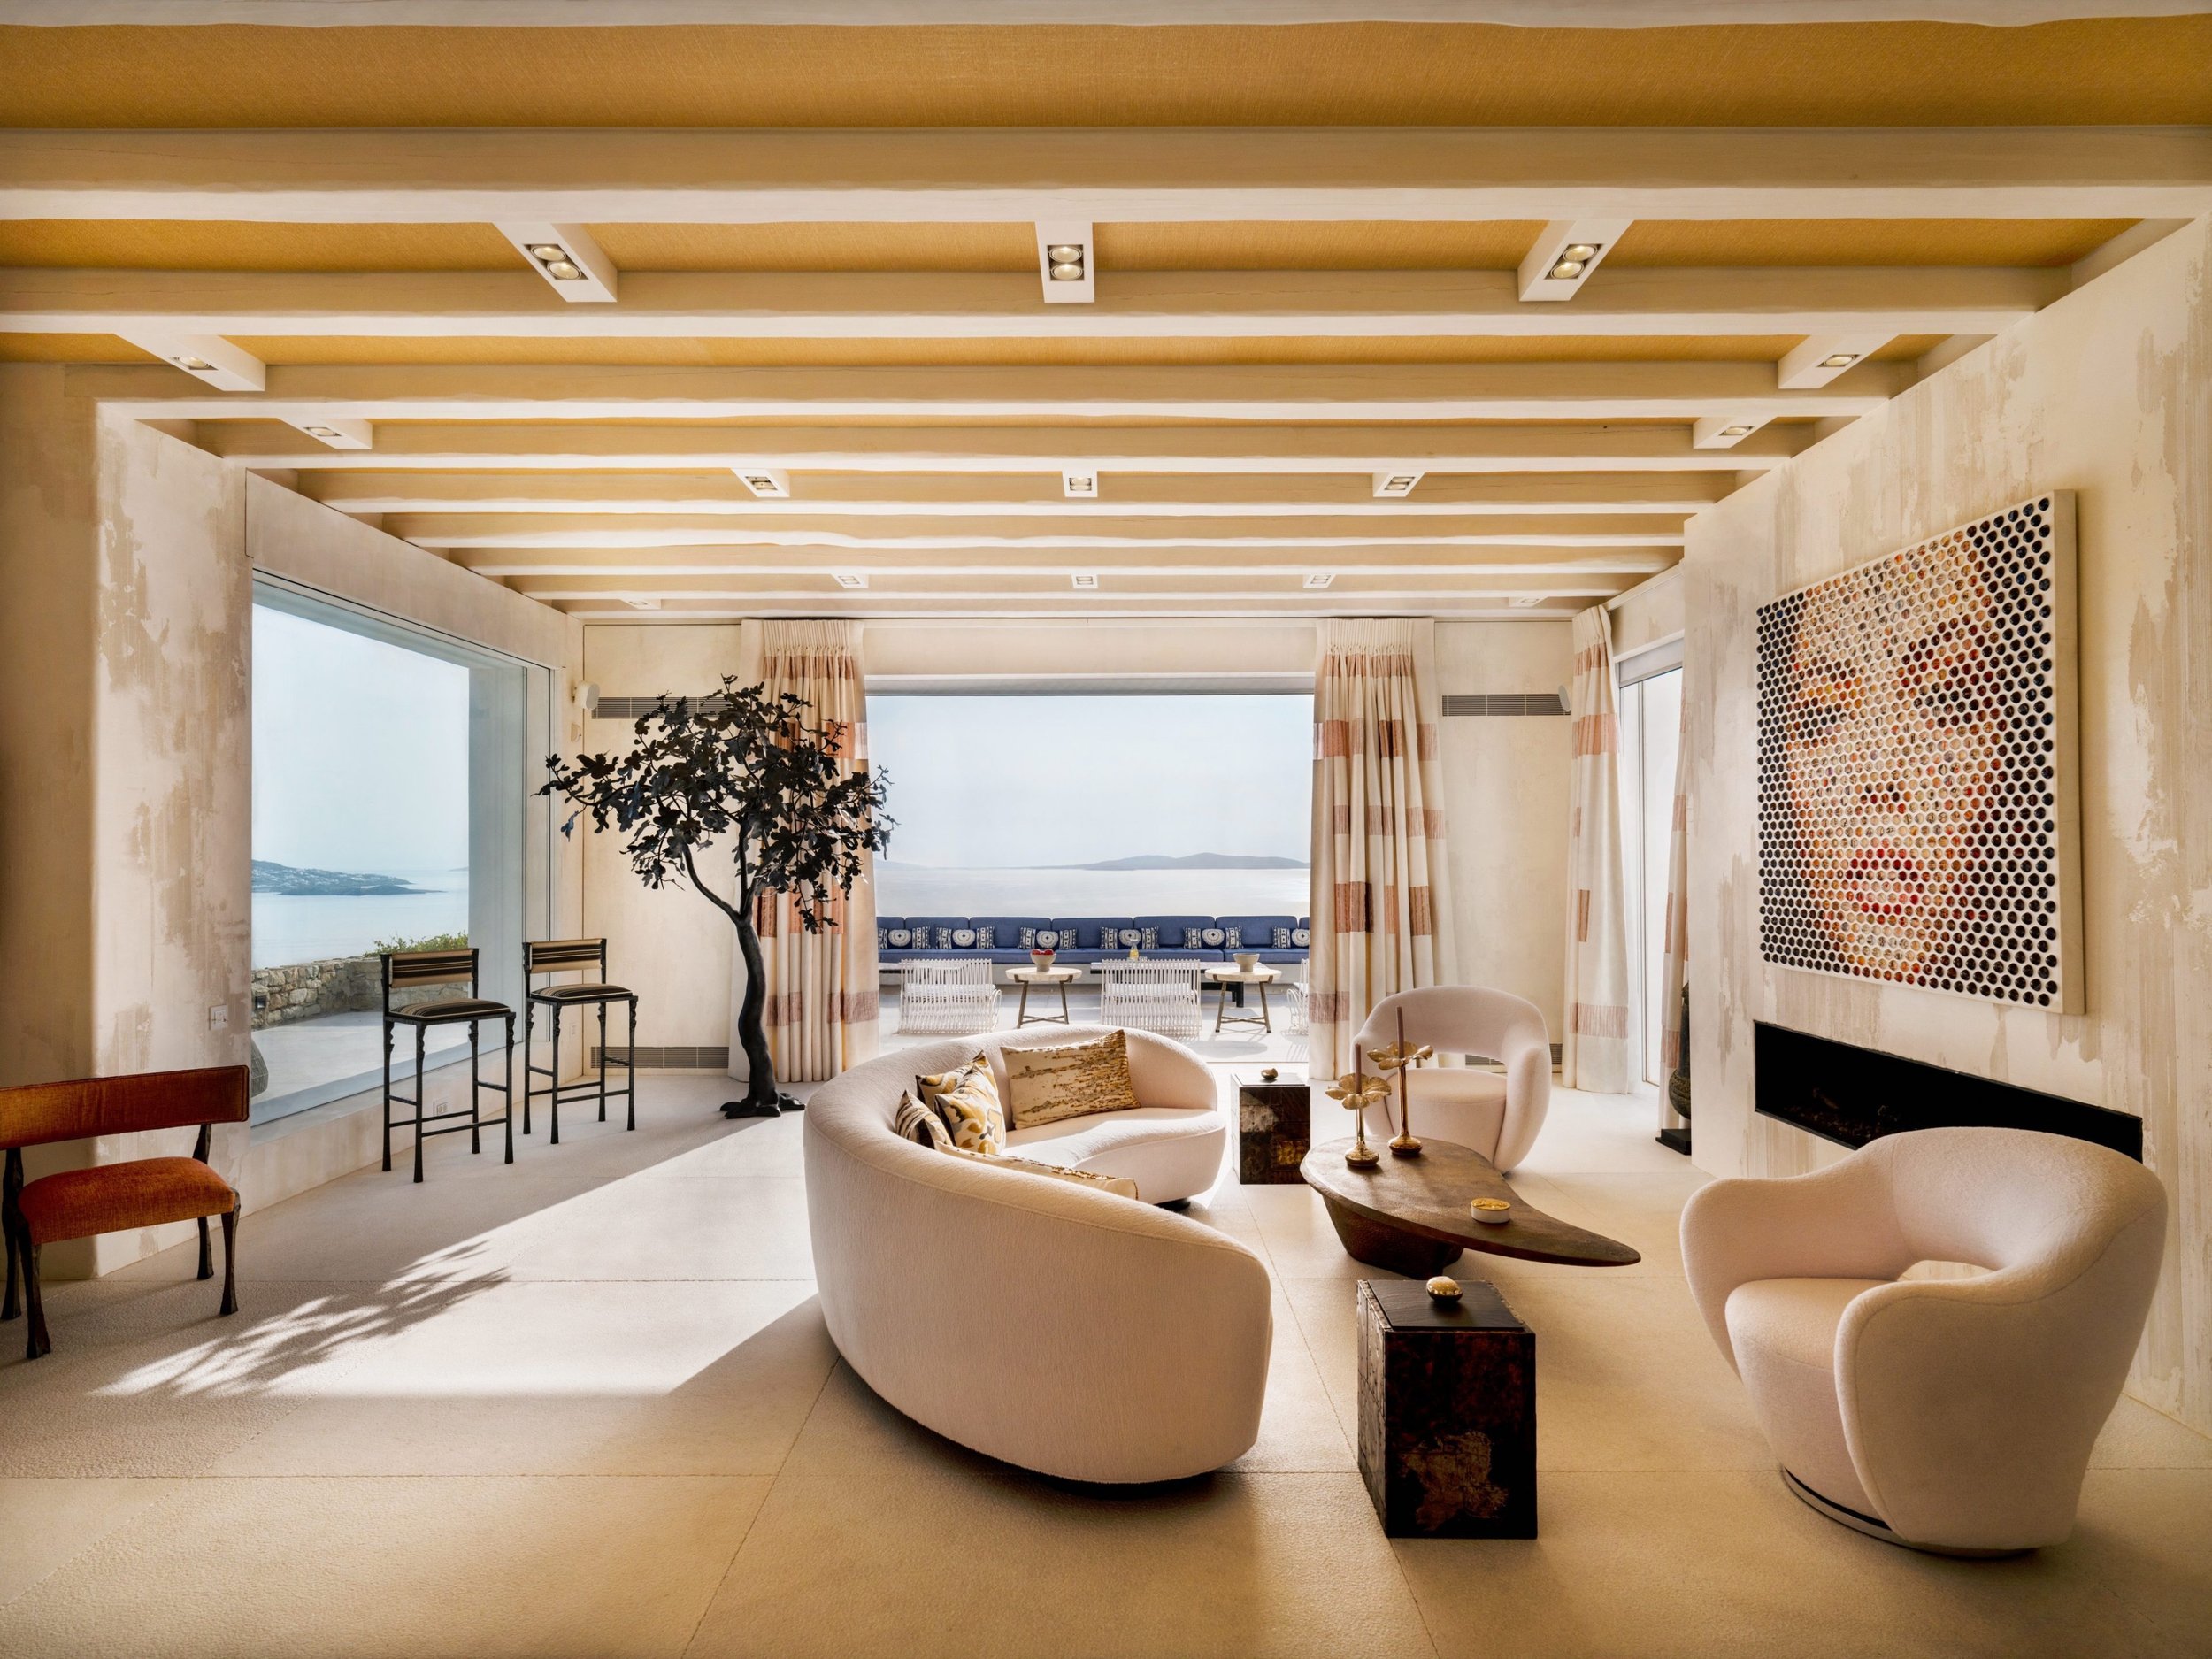 Francis York Luxury Villa For Sale in Mykonos, Greece 41.jpg